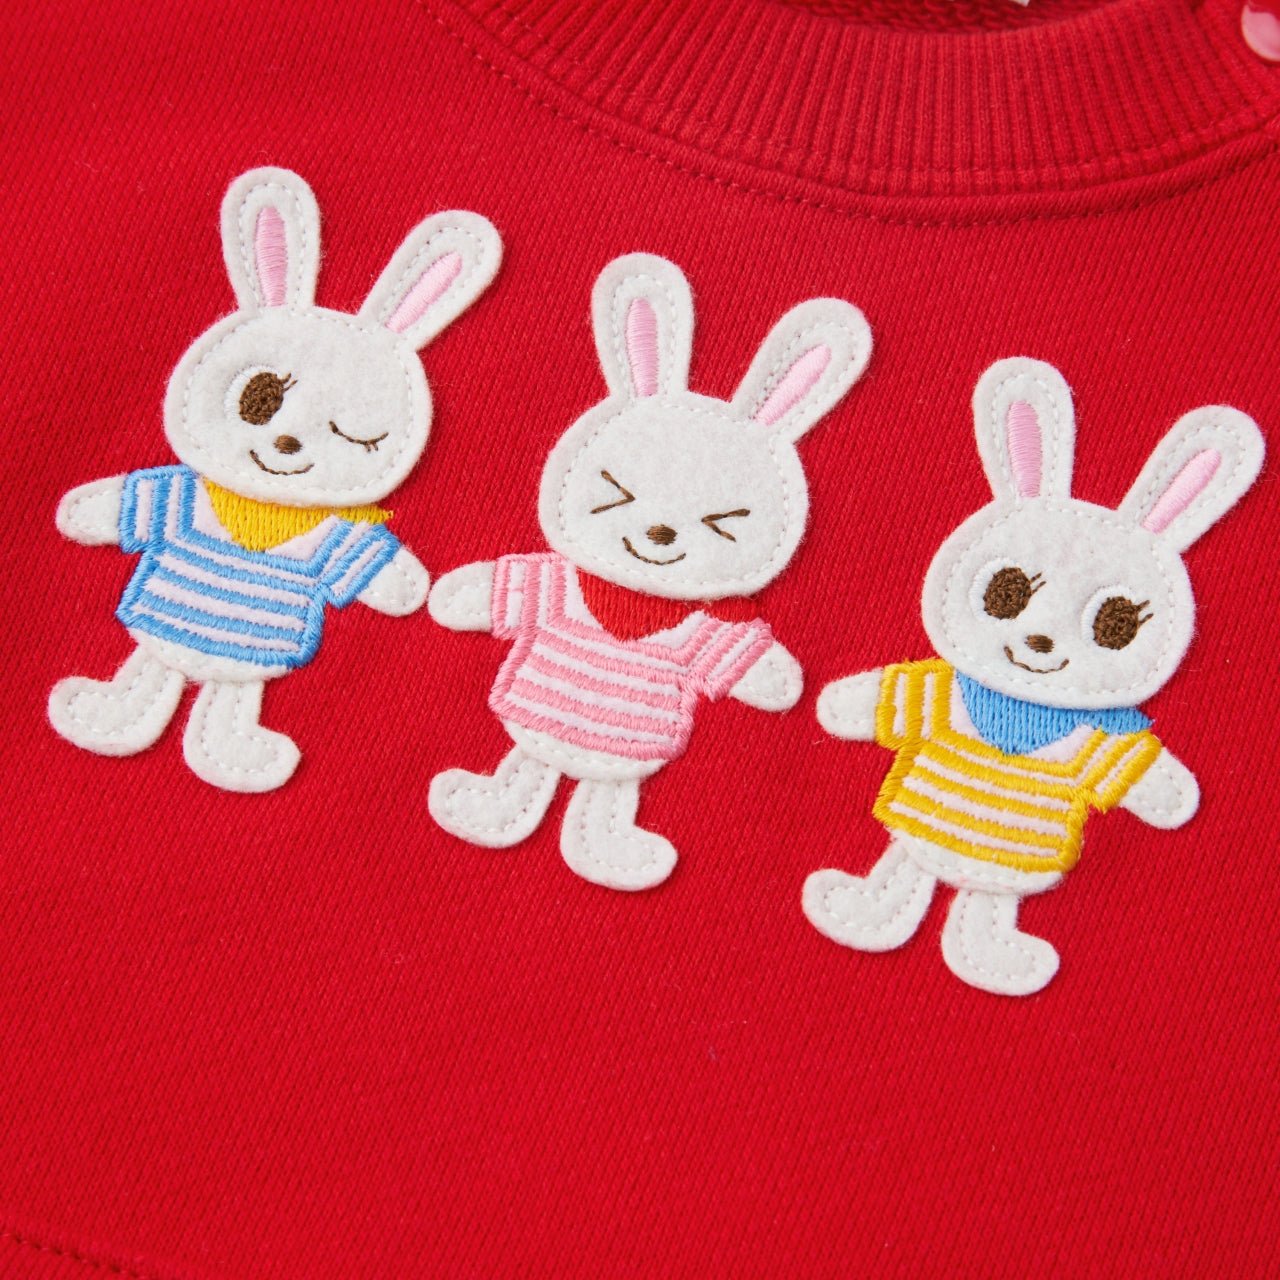 Kangaroo Pocket Sweatshirt - Usako - 13-5606-571-02-80